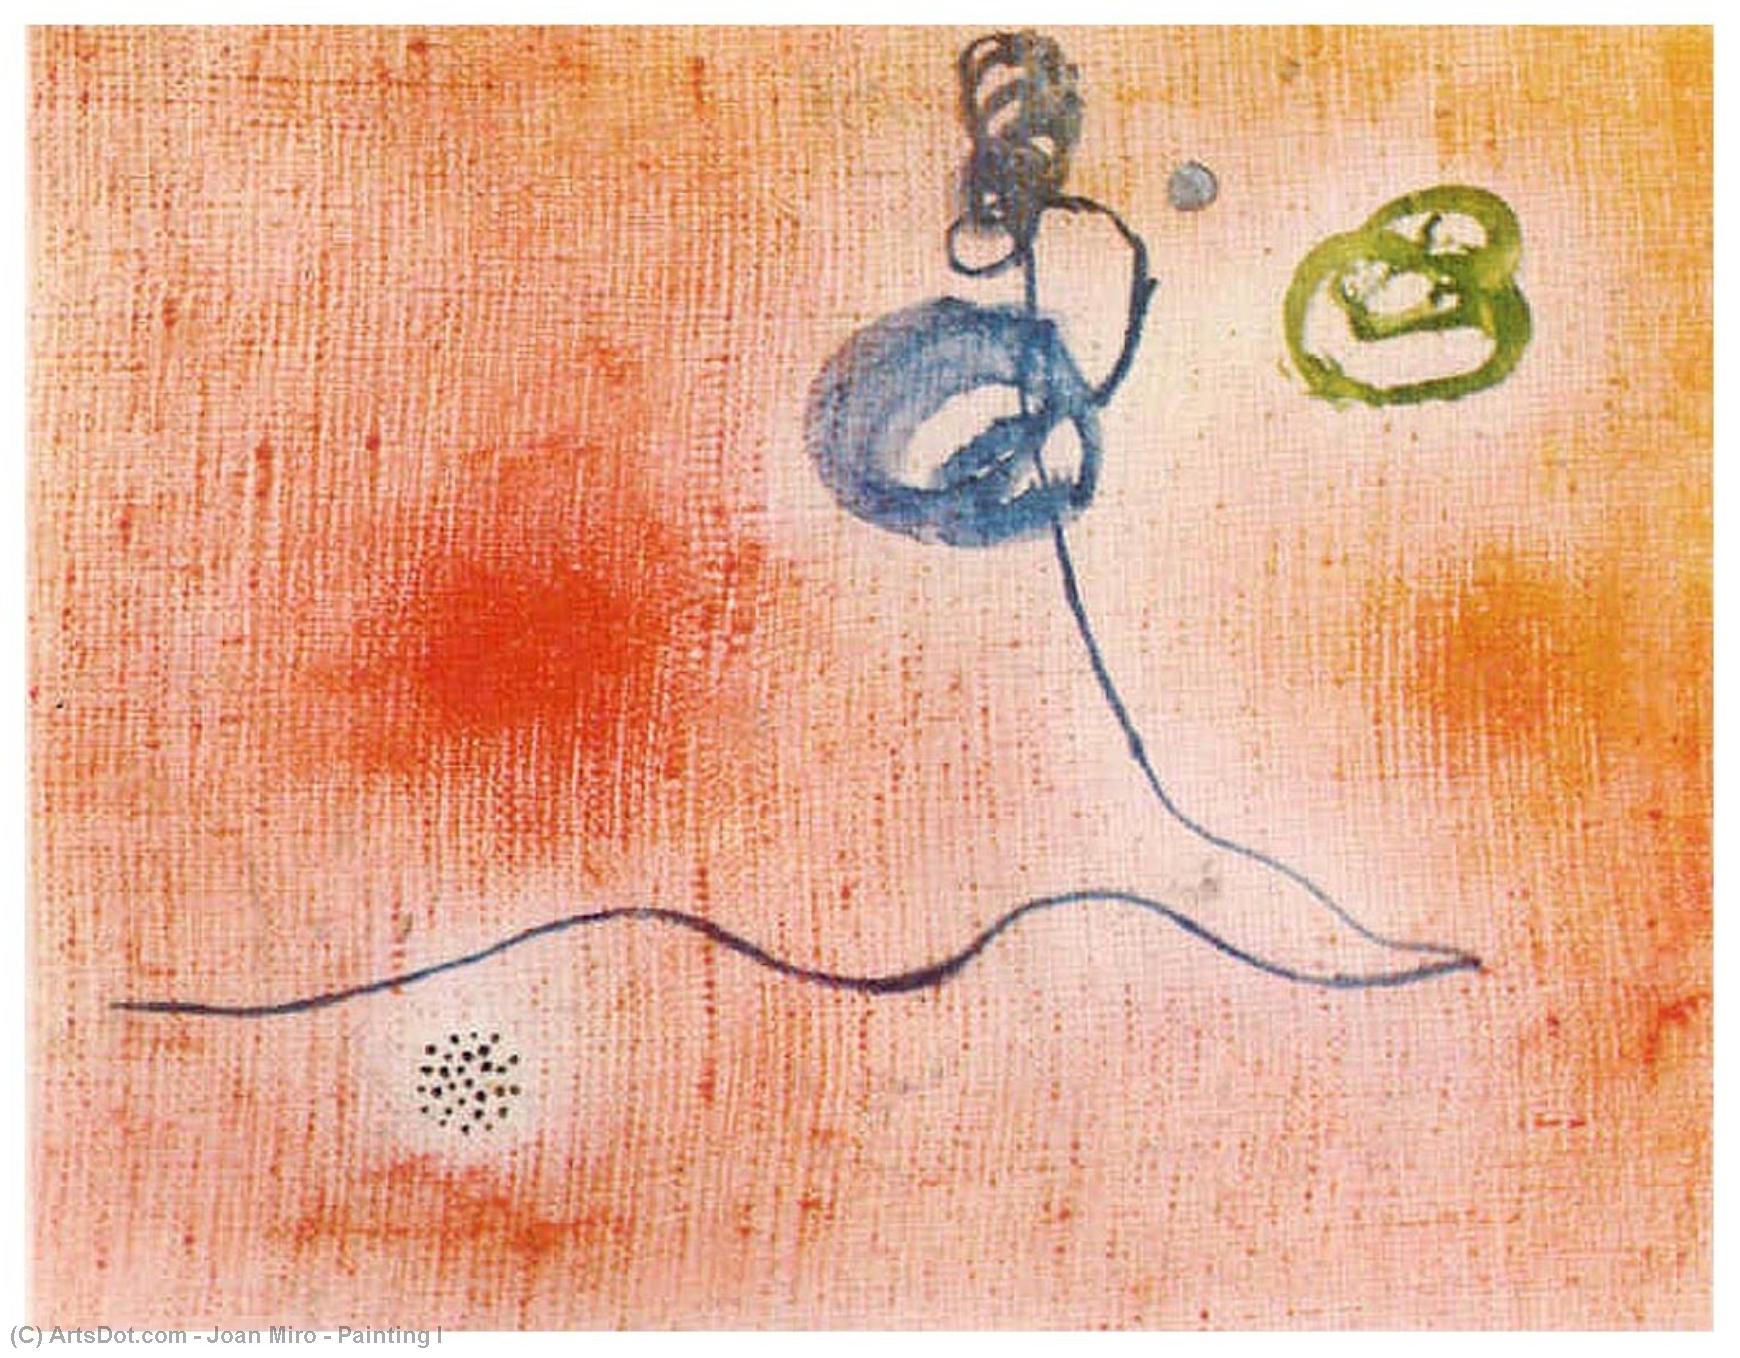 Wikioo.org - Bách khoa toàn thư về mỹ thuật - Vẽ tranh, Tác phẩm nghệ thuật Joan Miro - Painting I